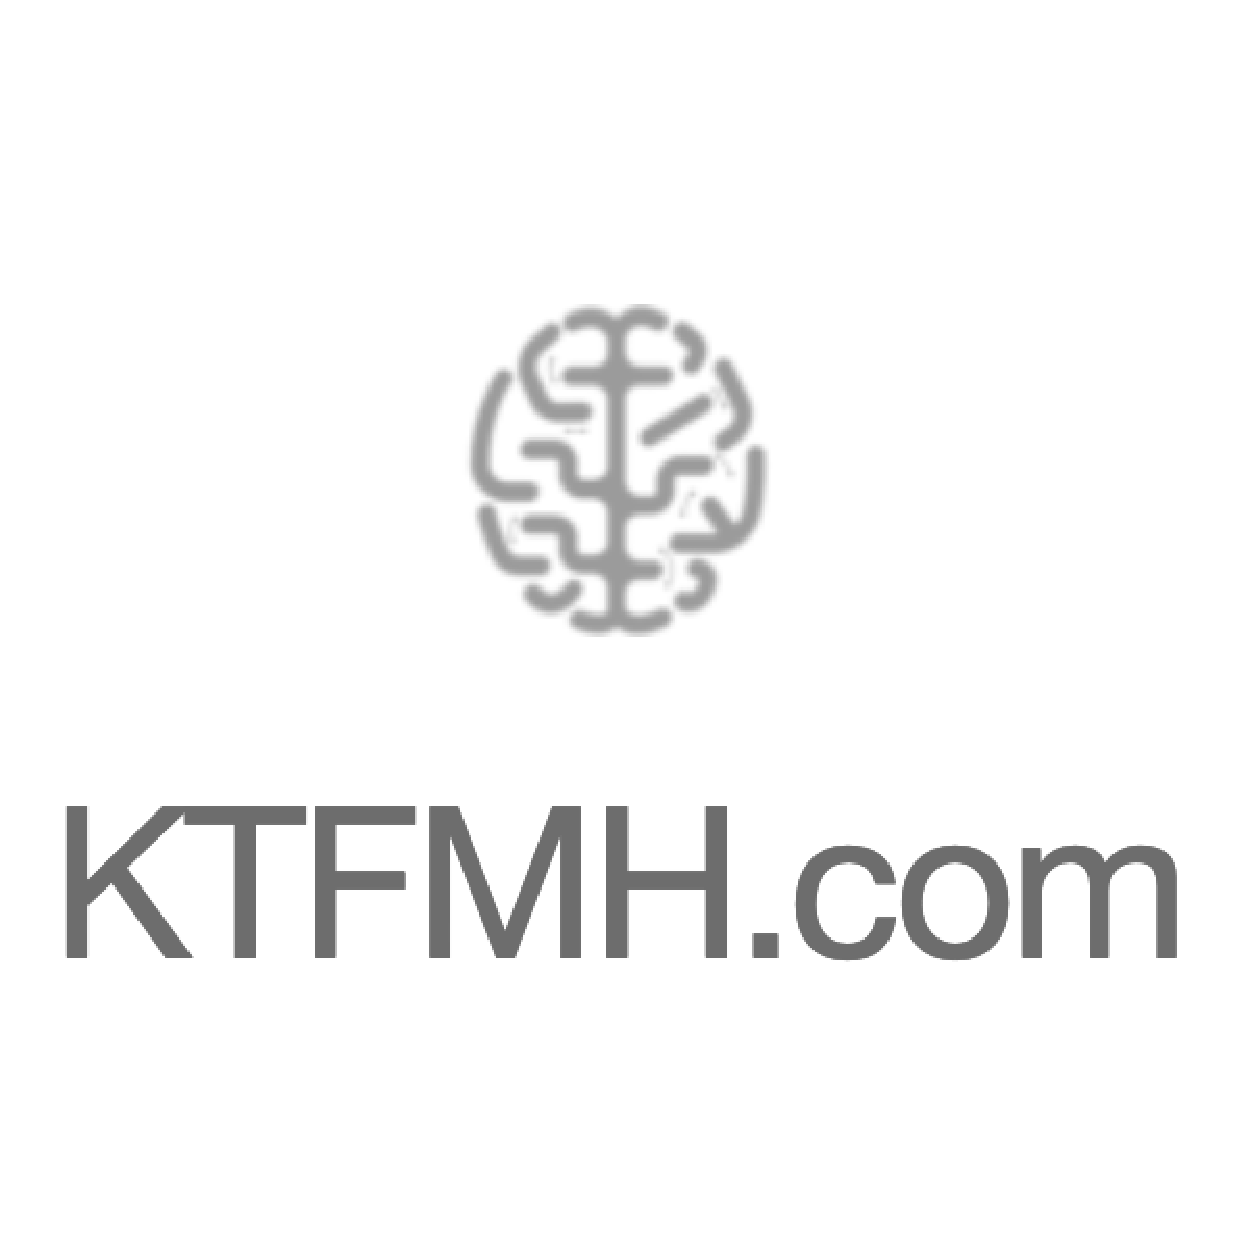 KTFMH.com logo